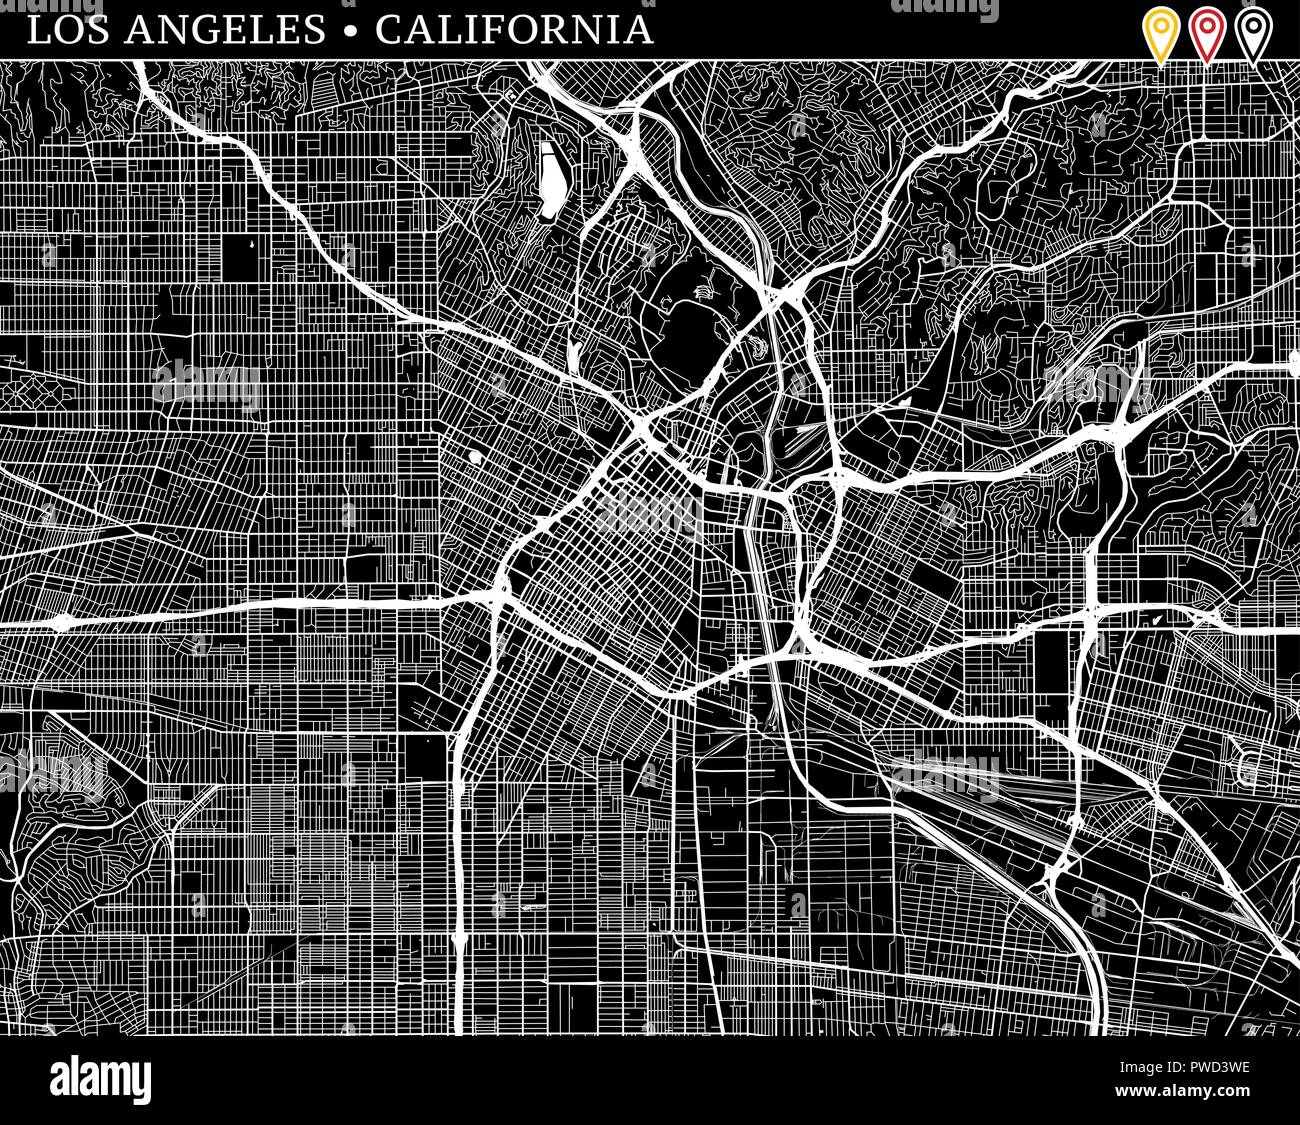 Einfache Karte von Los Angeles, Kalifornien, USA. Schwarze und weiße Version für saubere Hintergründe und druckt. Diese Karte von Los Angeles enthält drei Marker w Stock Vektor